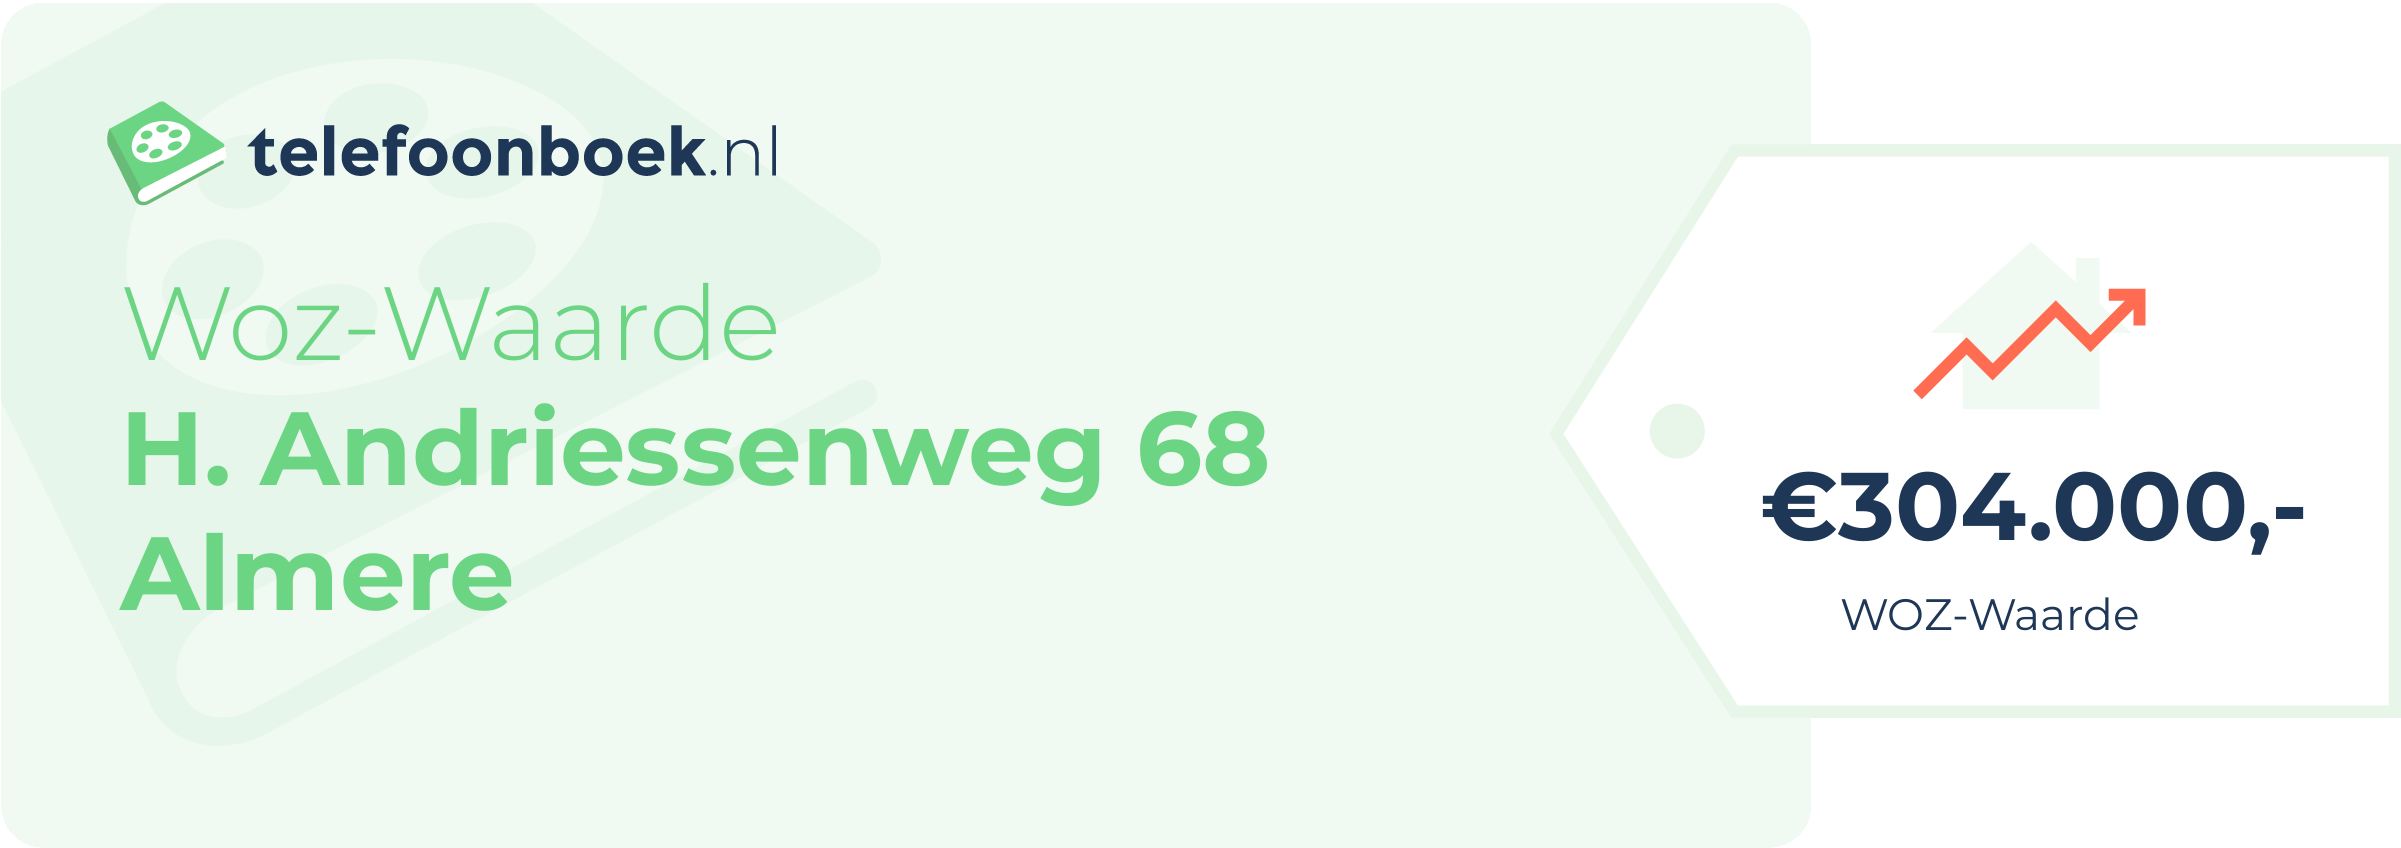 WOZ-waarde H. Andriessenweg 68 Almere